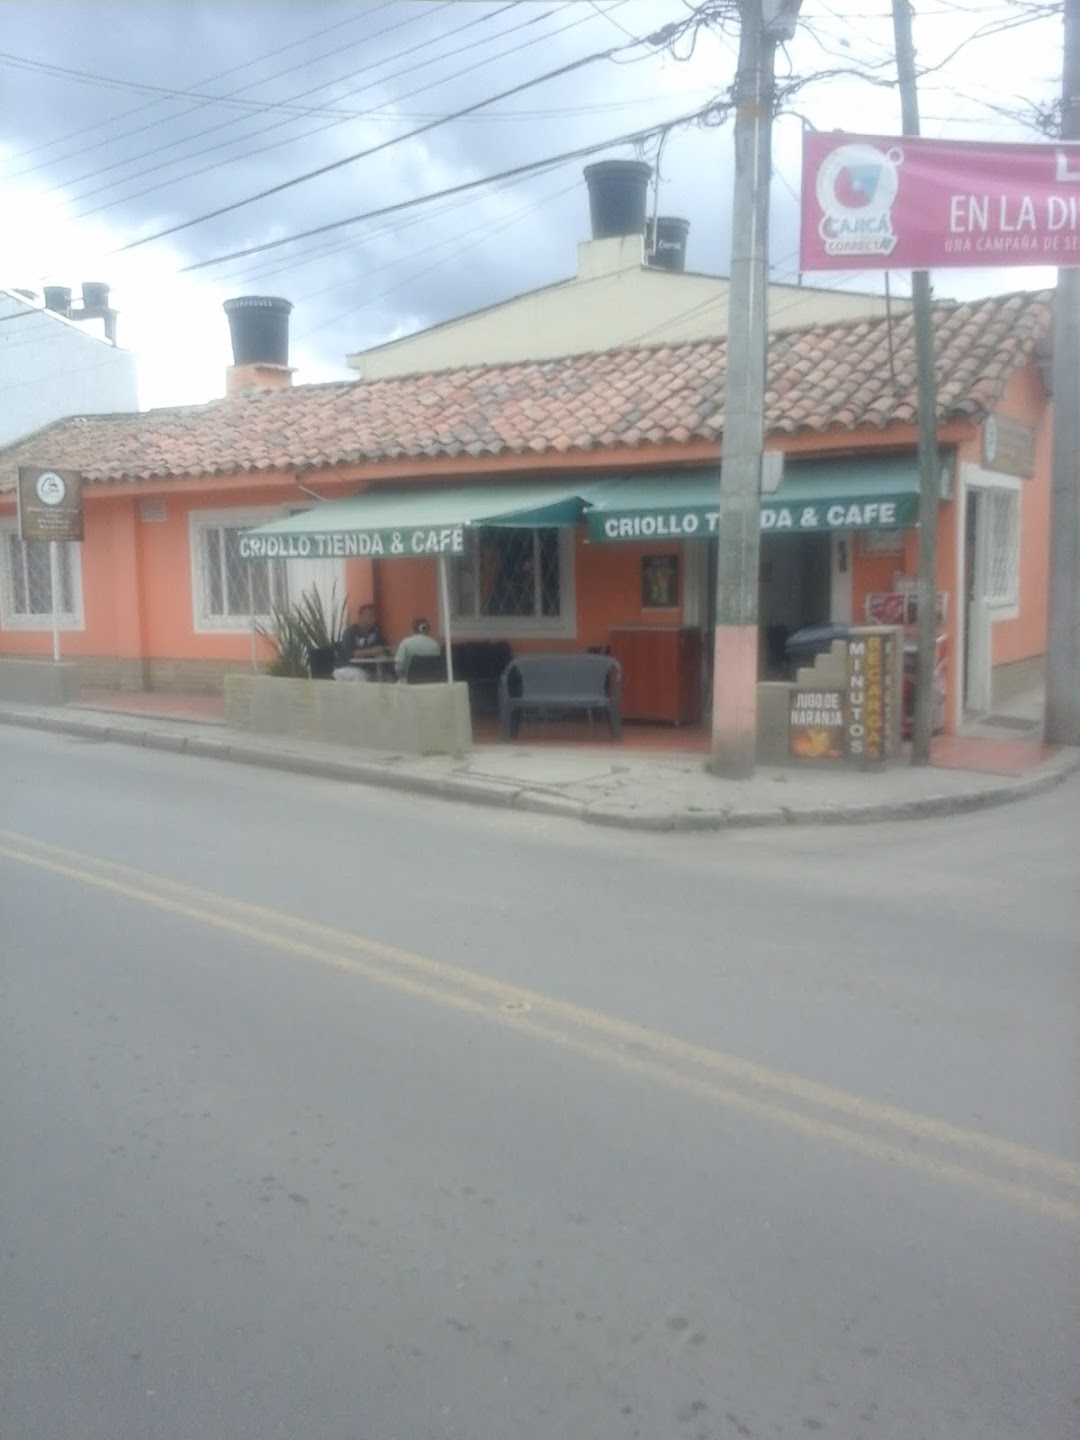 Criollo, Tienda y Cafe